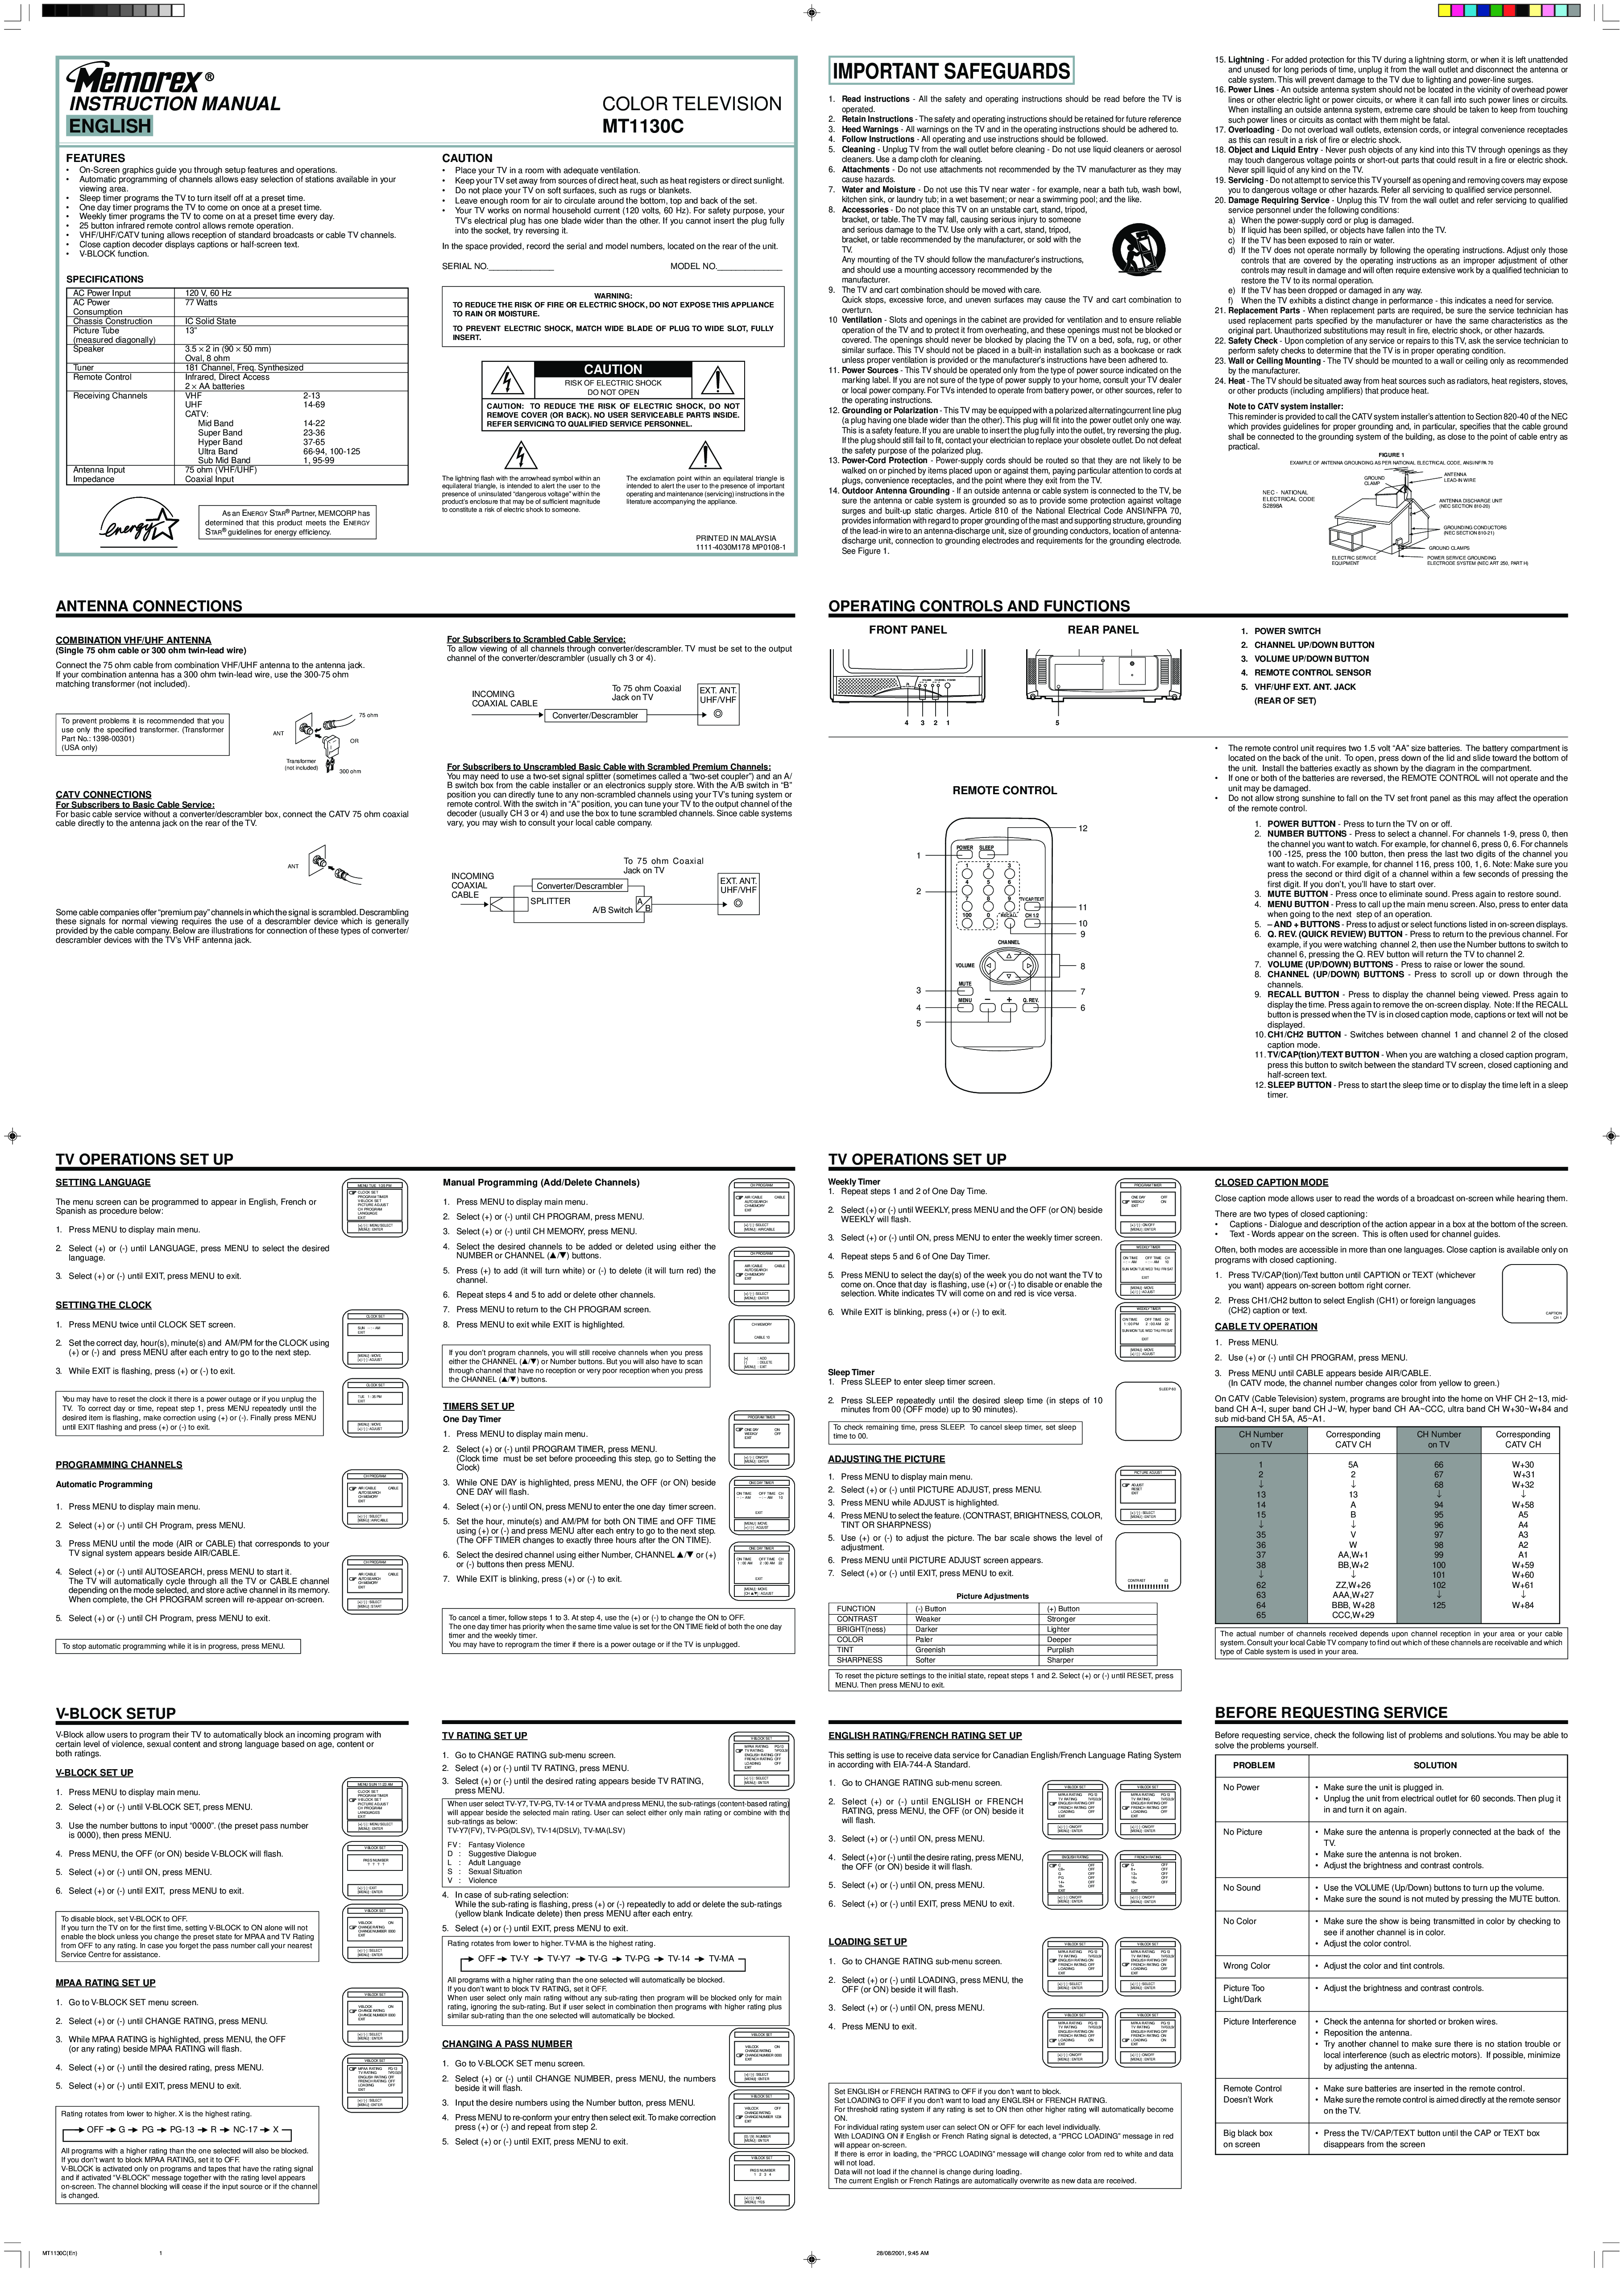 Memorex MT1130C User Manual